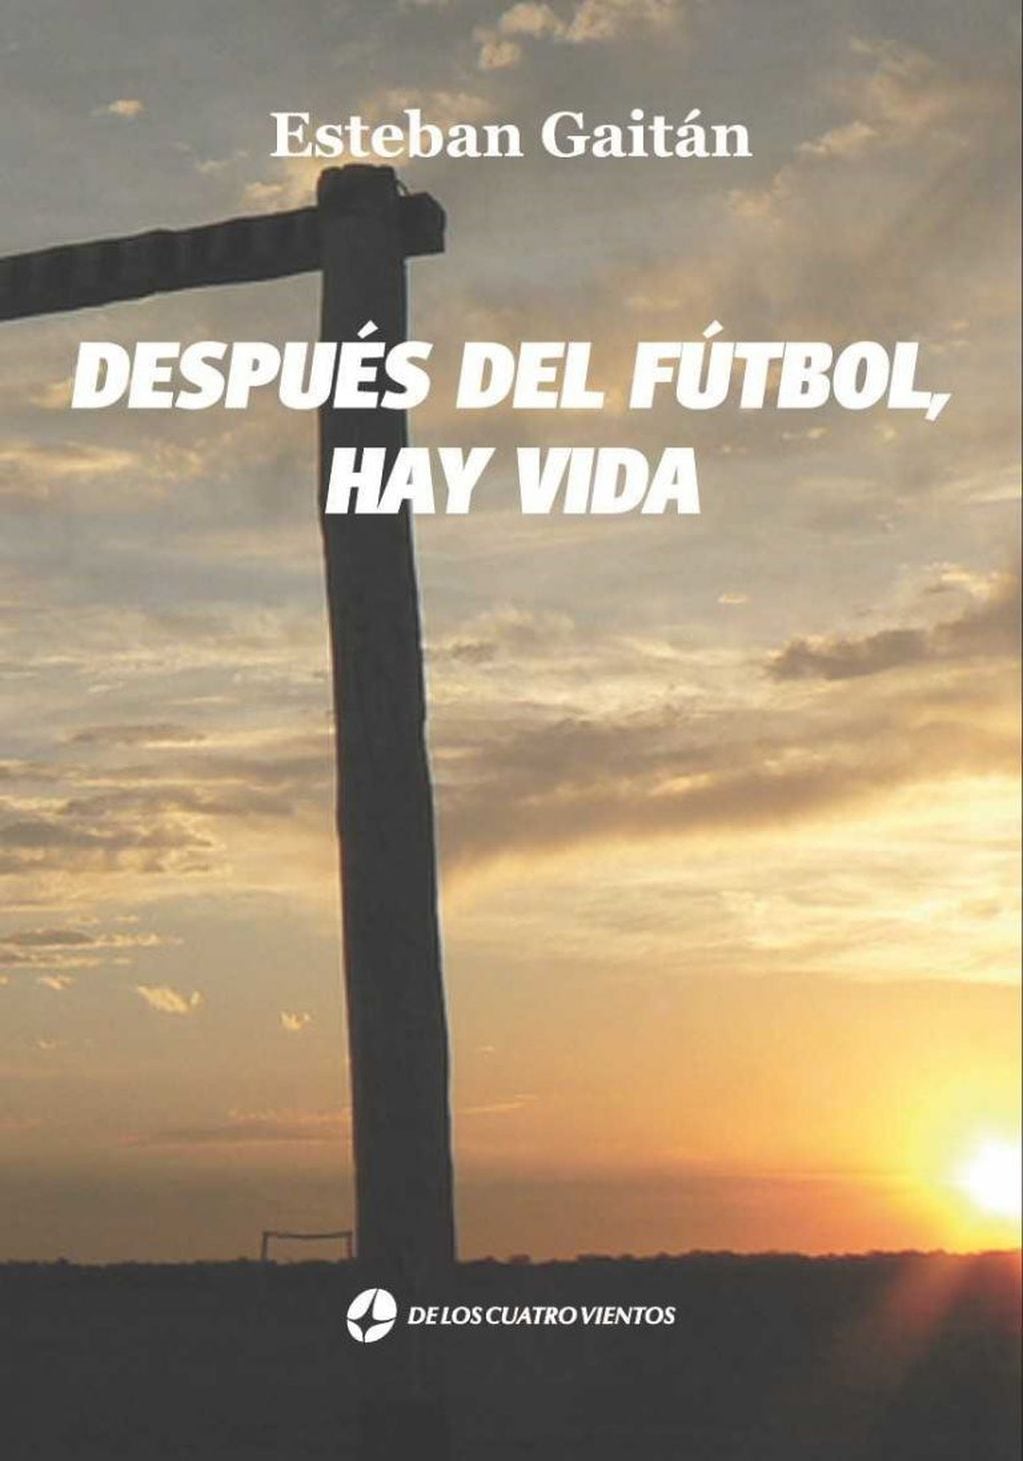 Portada del libro "Después del fútbol hay vida".